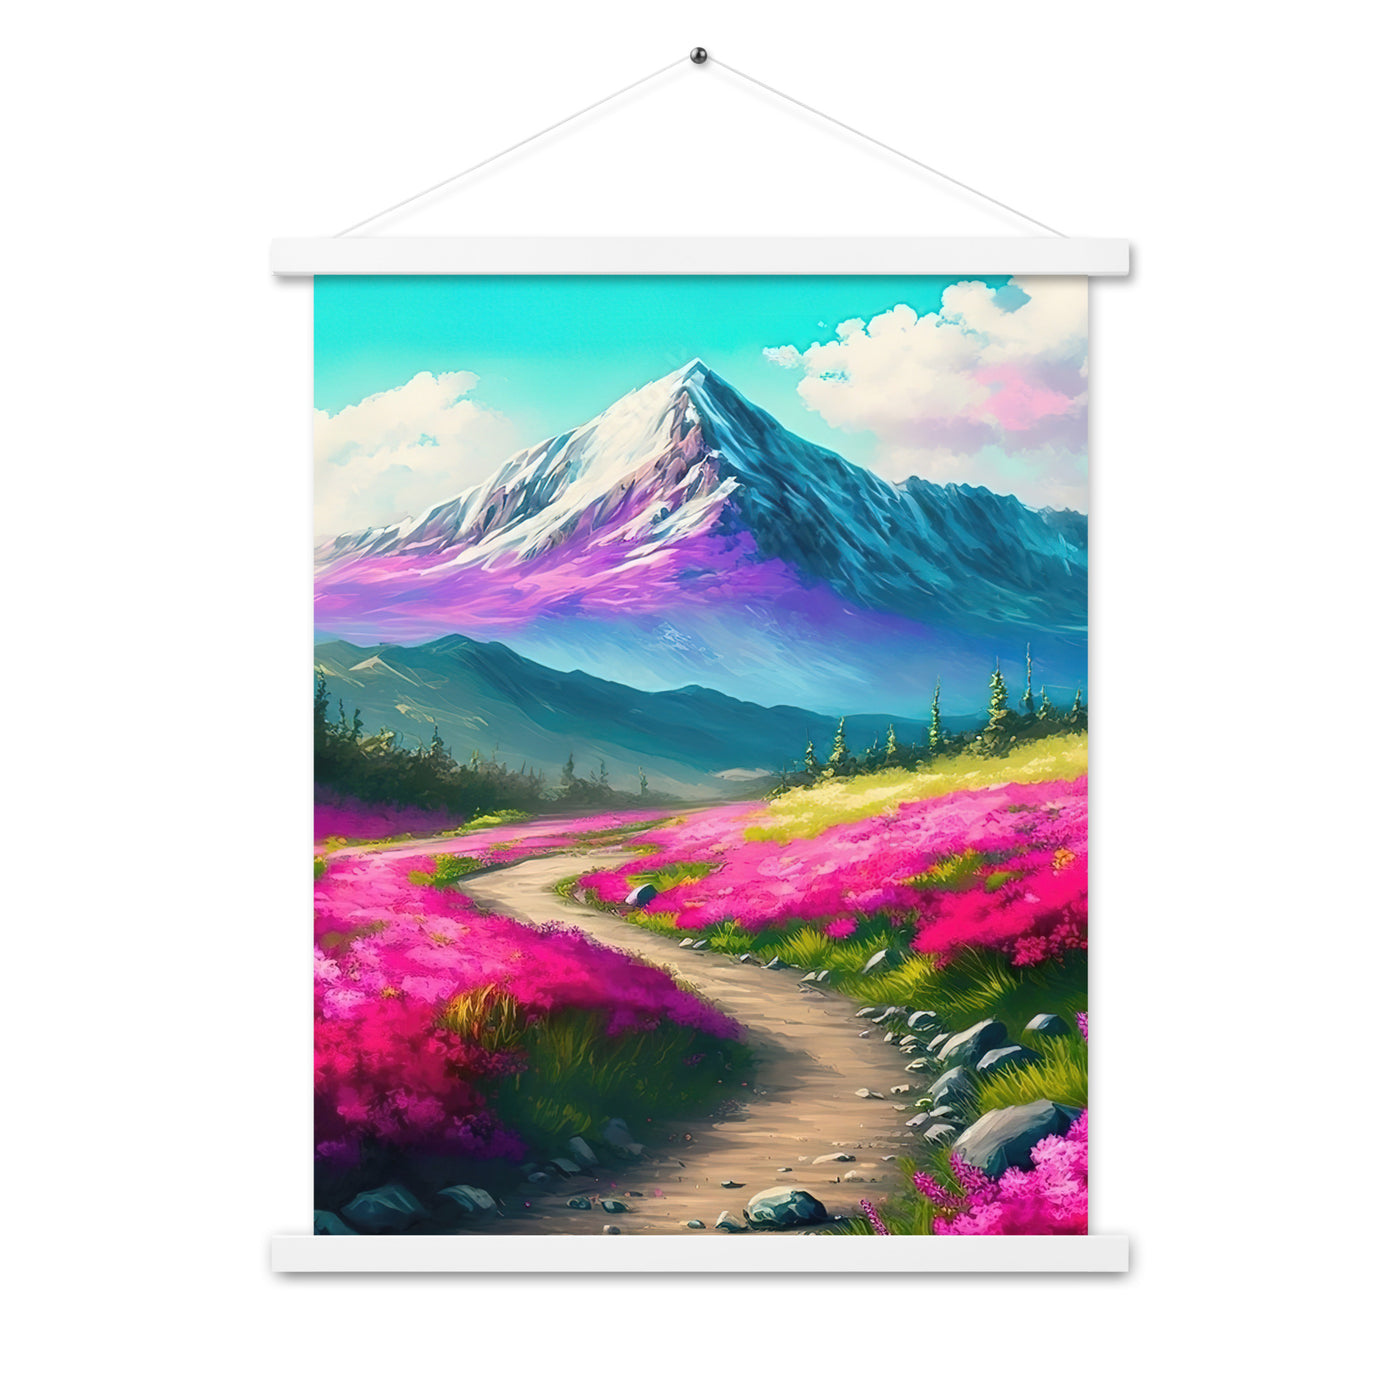 Berg, pinke Blumen und Wanderweg - Landschaftsmalerei - Premium Poster mit Aufhängung berge xxx 45.7 x 61 cm